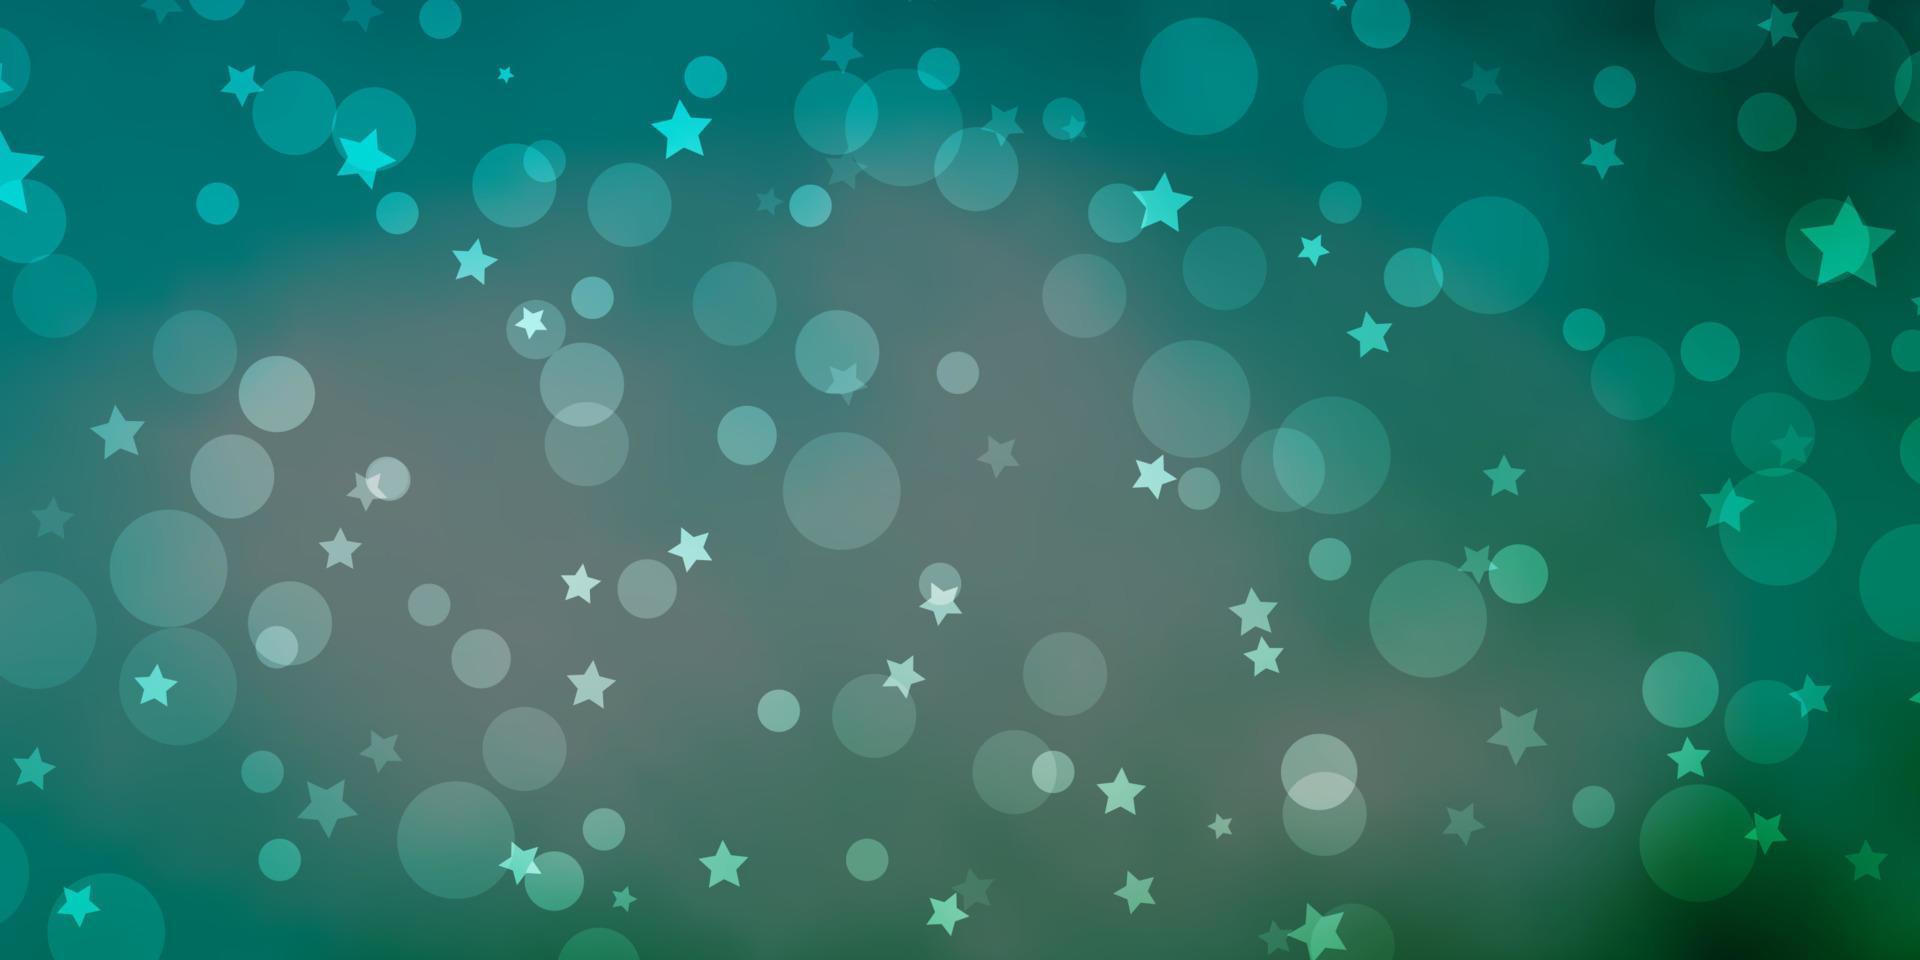 fundo vector azul, verde claro com círculos, estrelas.